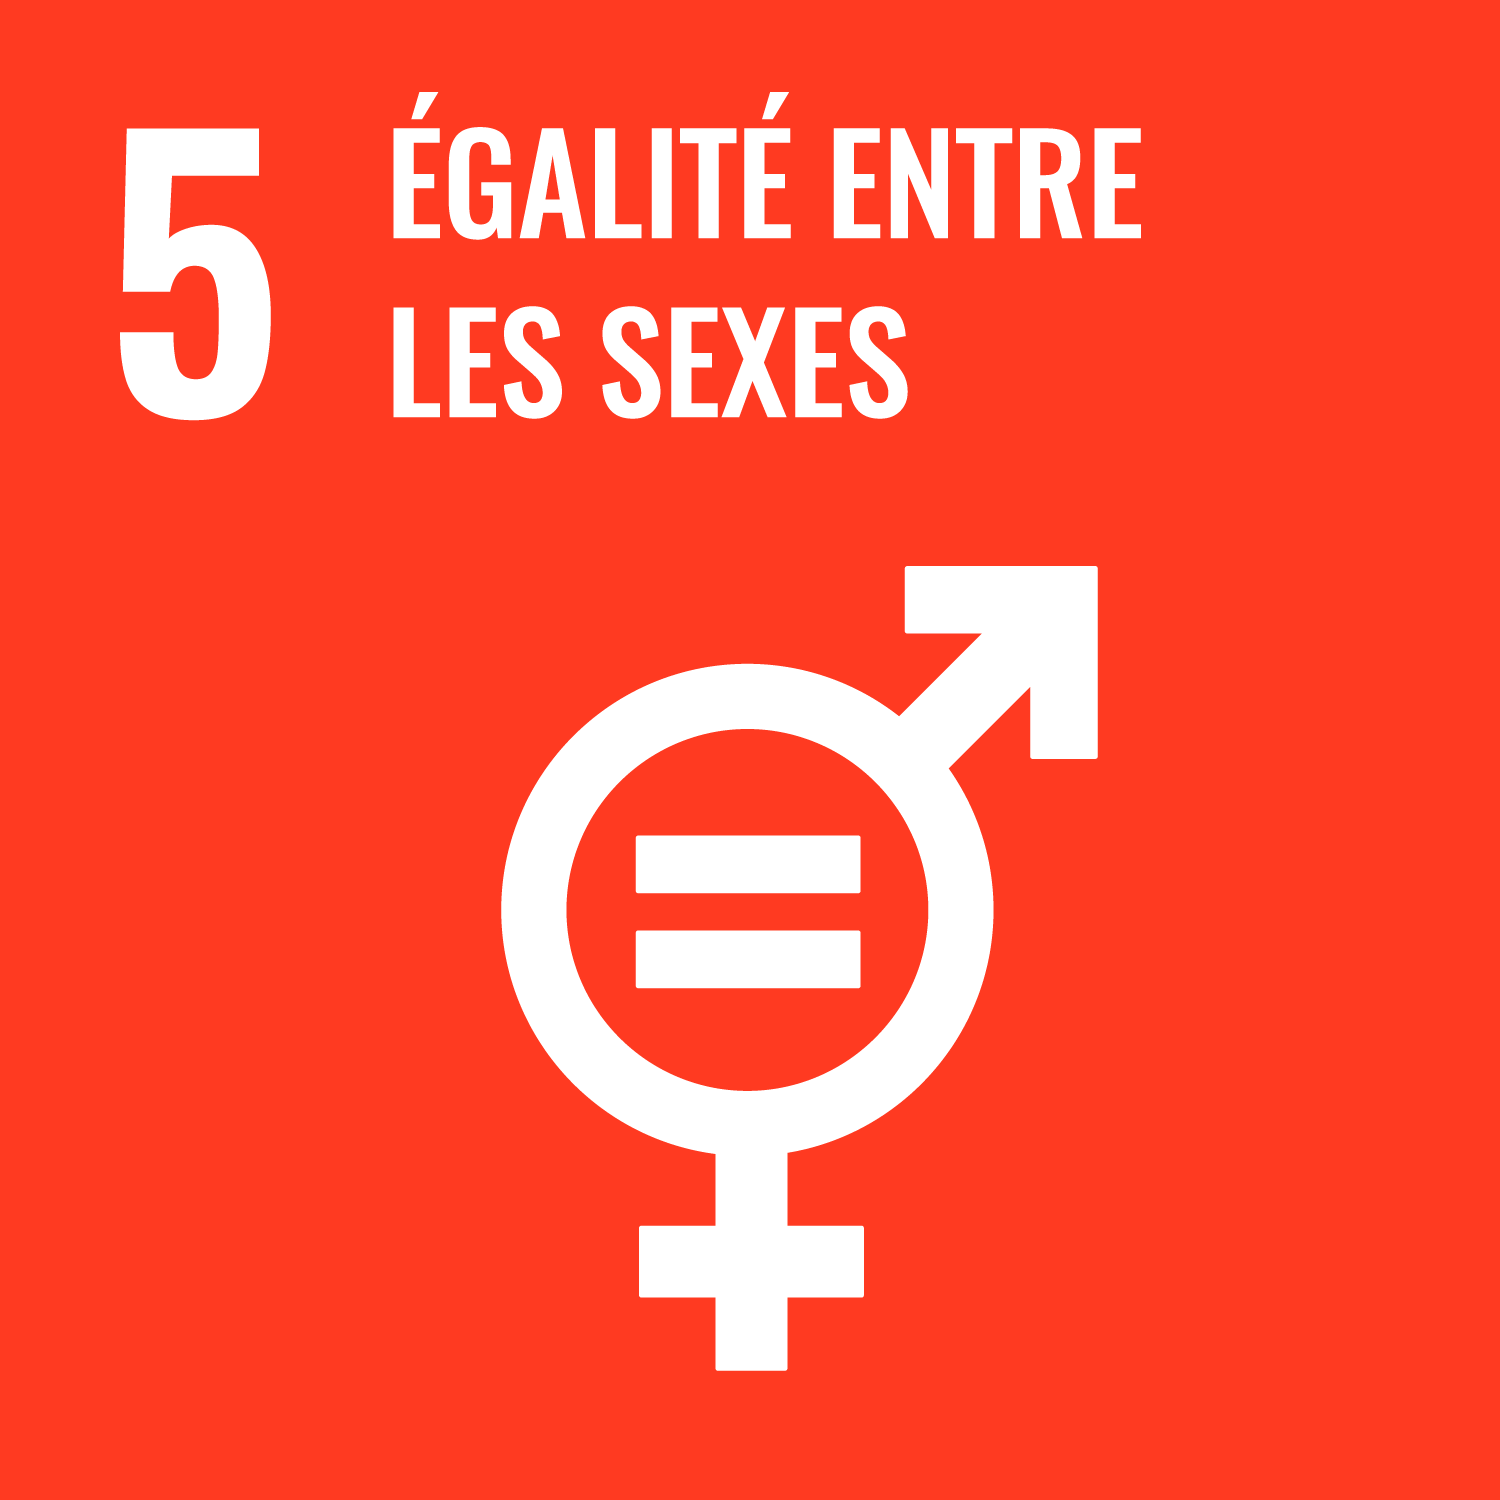 5. Égalité entre les sexes